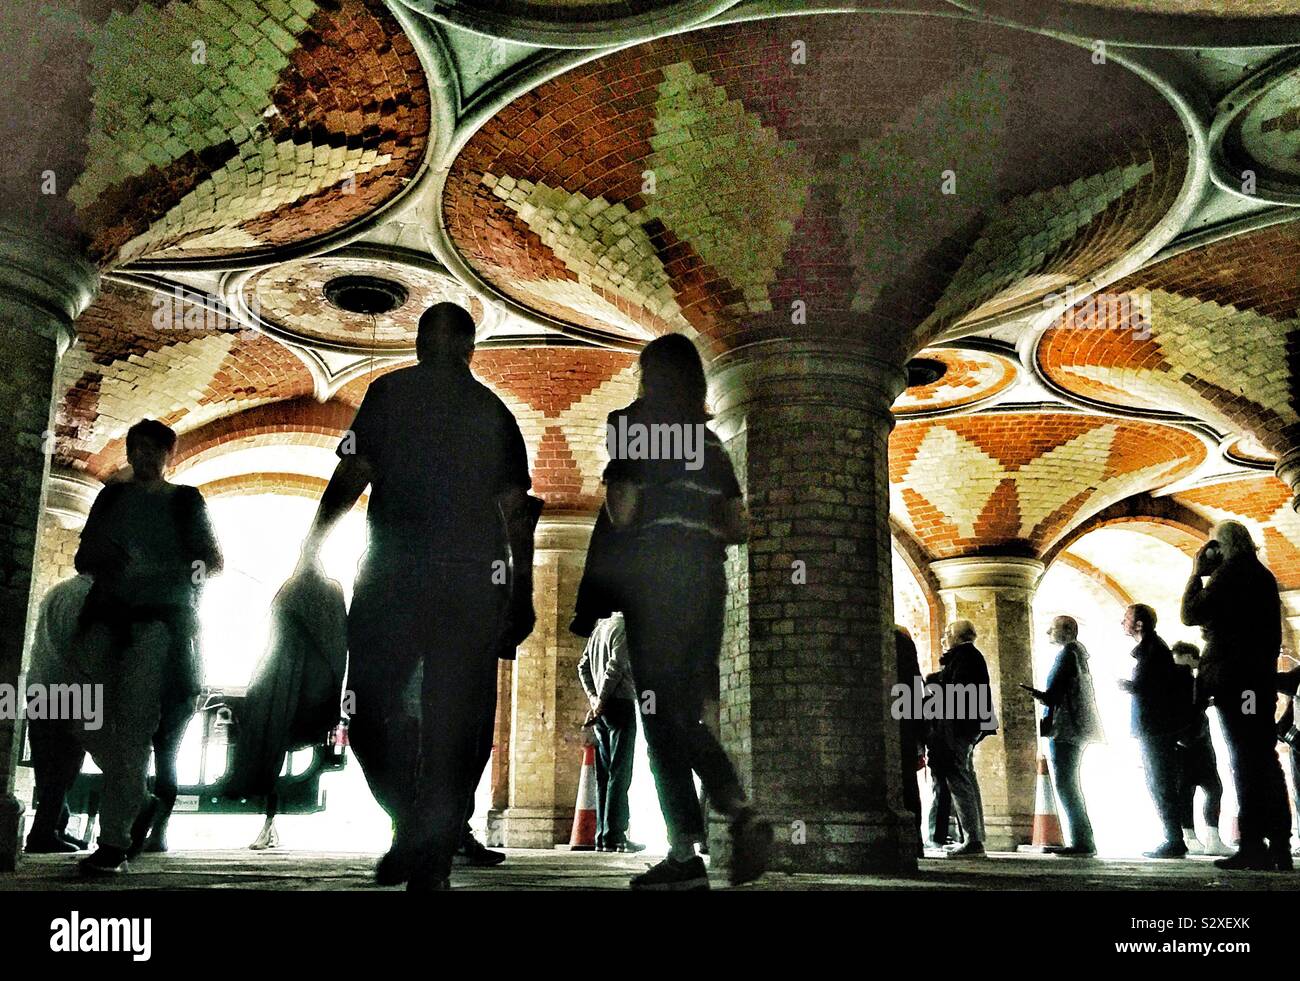 Ai visitatori di ammirare l'architettura del palazzo di cristallo alla metropolitana. Foto Stock